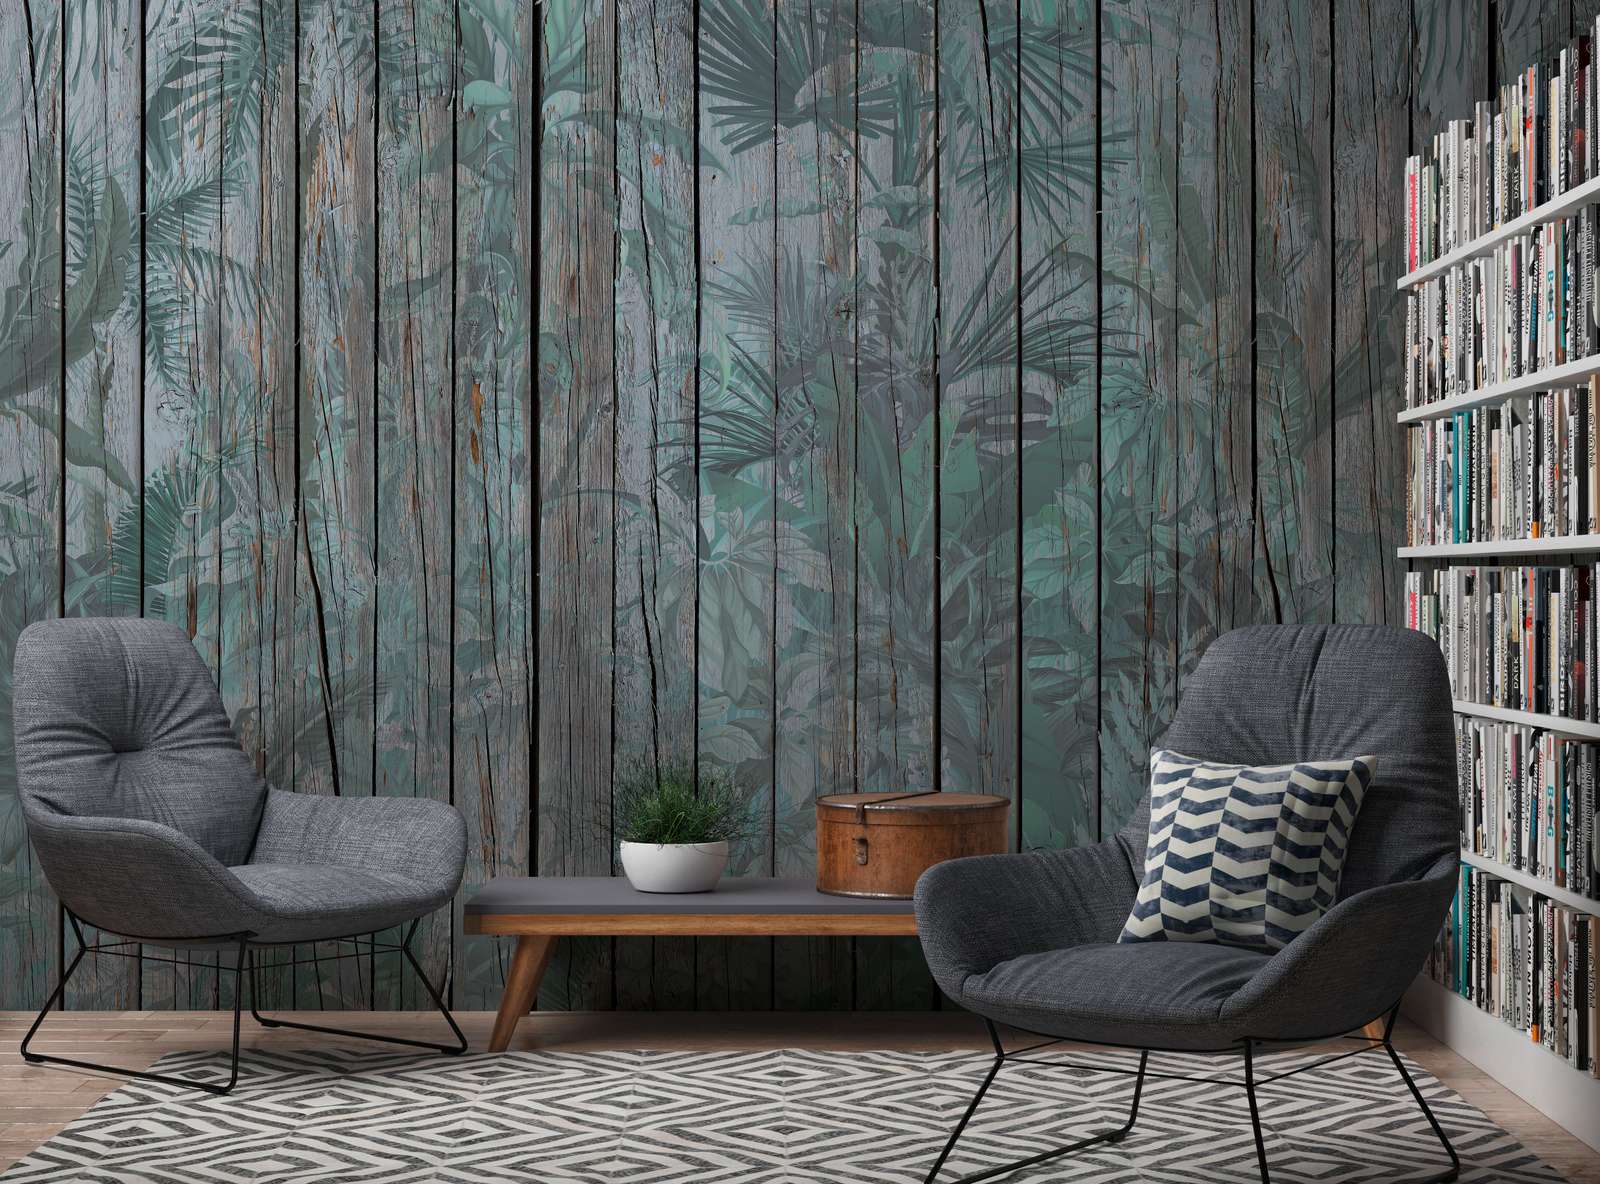             Papier peint mur en bois avec plantes de la jungle - marron, vert
        